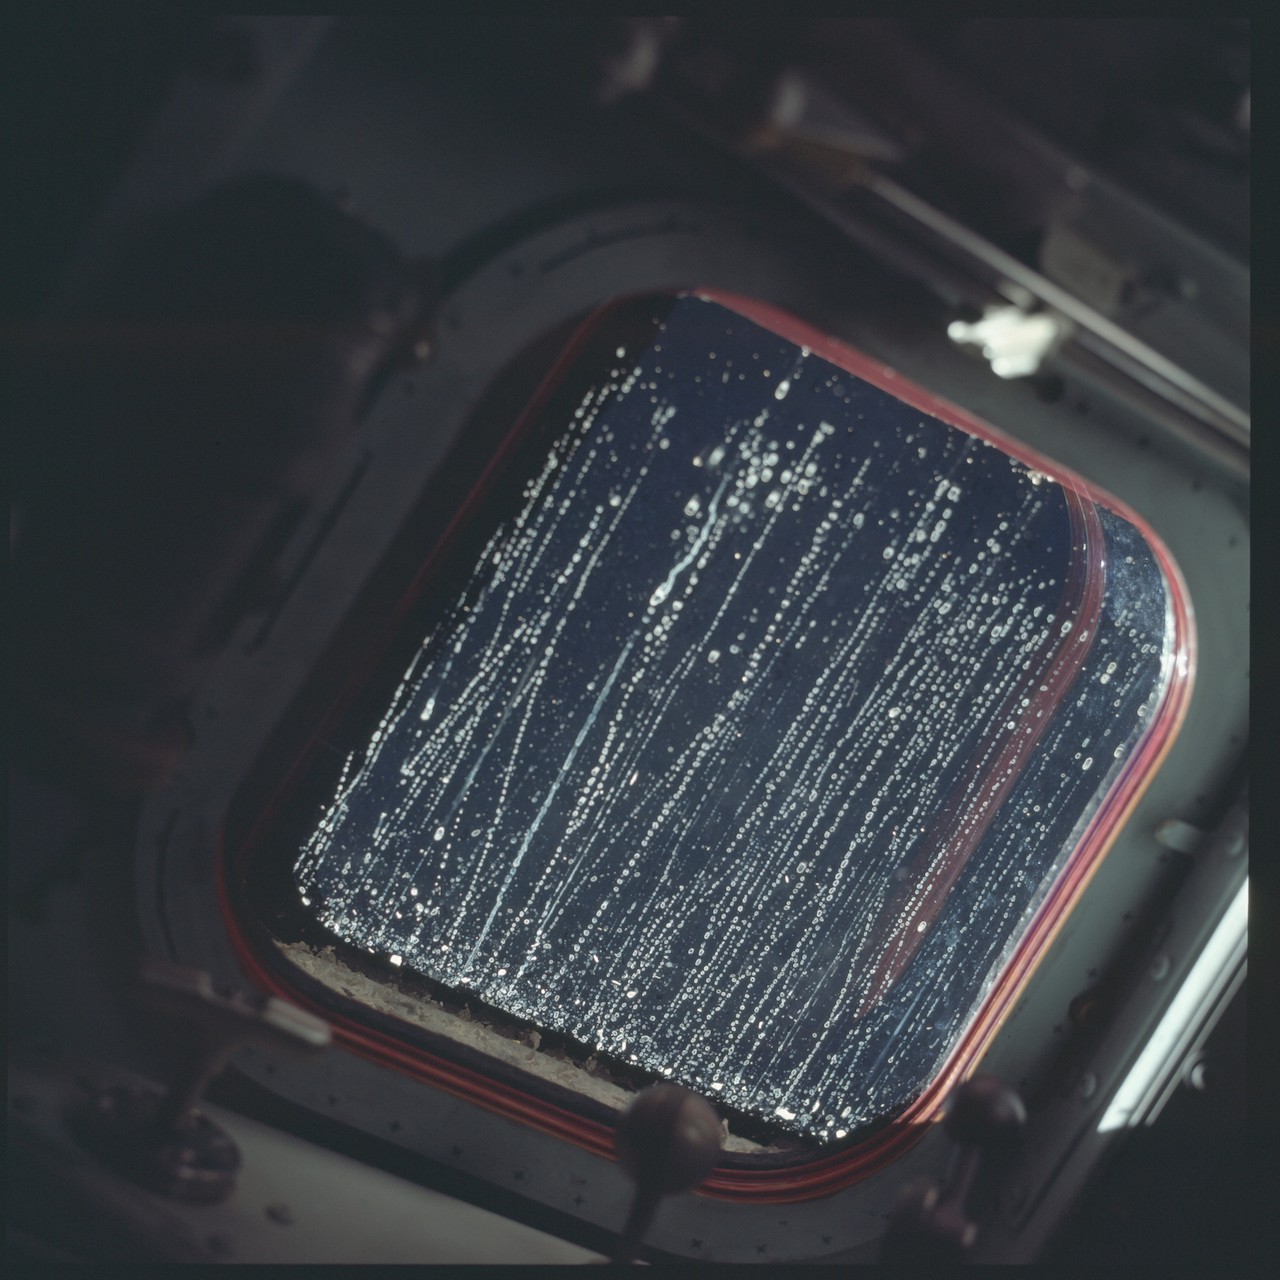 Condensation sur la fenêtre du module lunaire Apollo 12, novembre 1969 par NASA